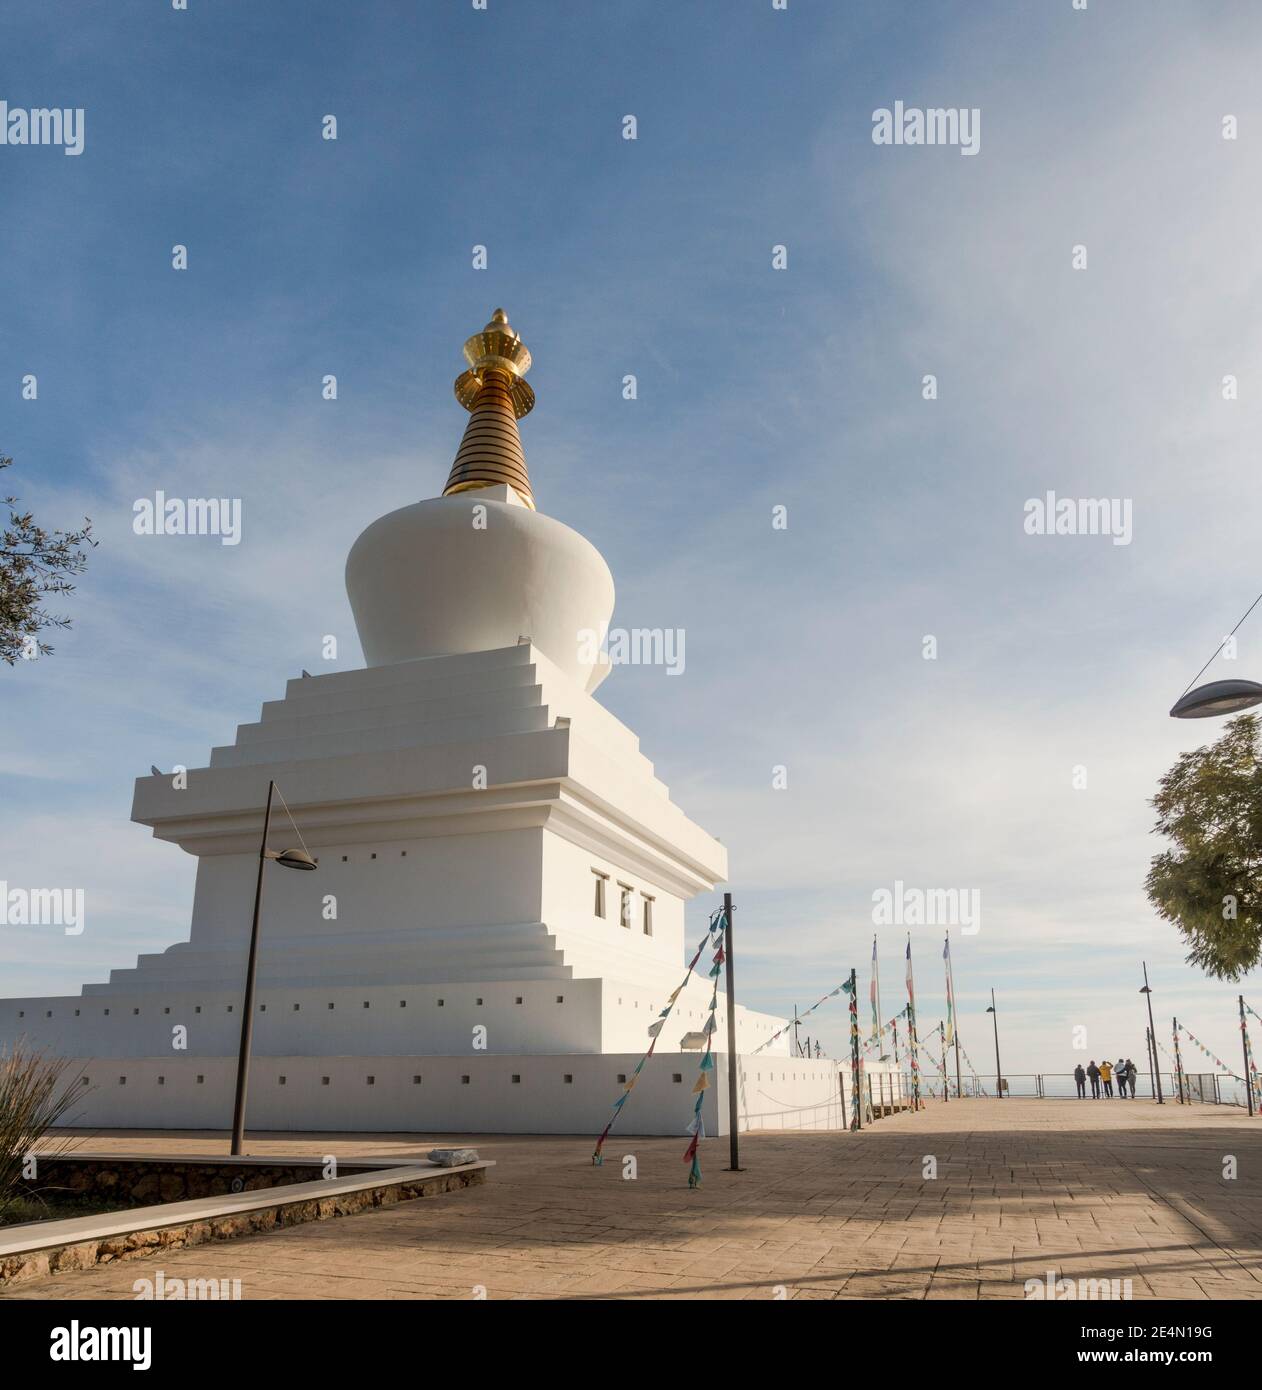 Temple bouddhiste, d'un monument pour la paix, l'Illumination Stupa, temple à Benalmádena. Costa del Sol, Espagne. Banque D'Images